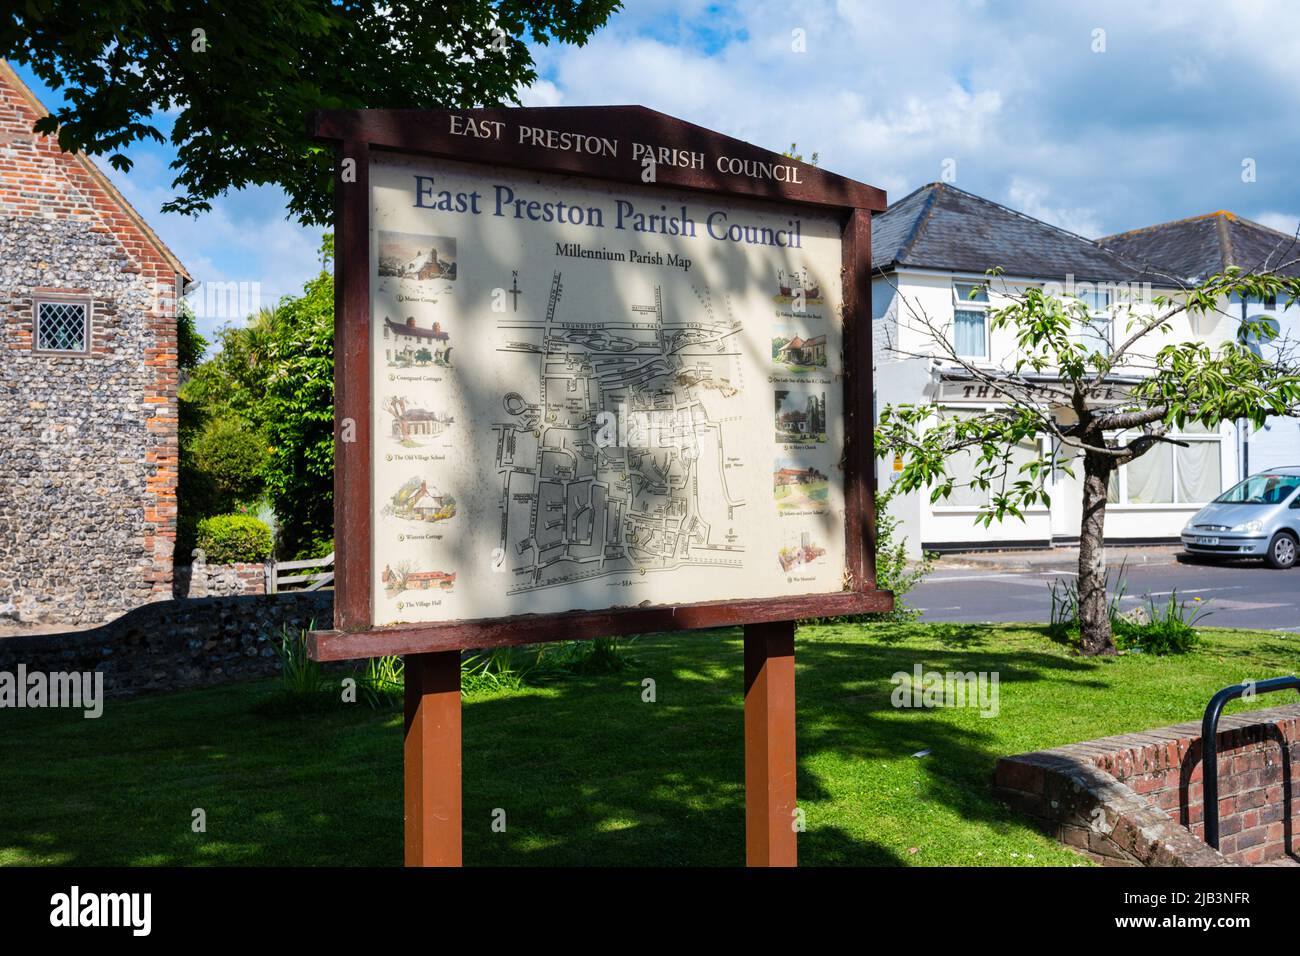 Mappa del Millennio del Consiglio Parrocchiale di East Preston su un cartello di legno del villaggio di informazioni pubbliche a East Preston, West Sussex, Inghilterra, Regno Unito. Foto Stock